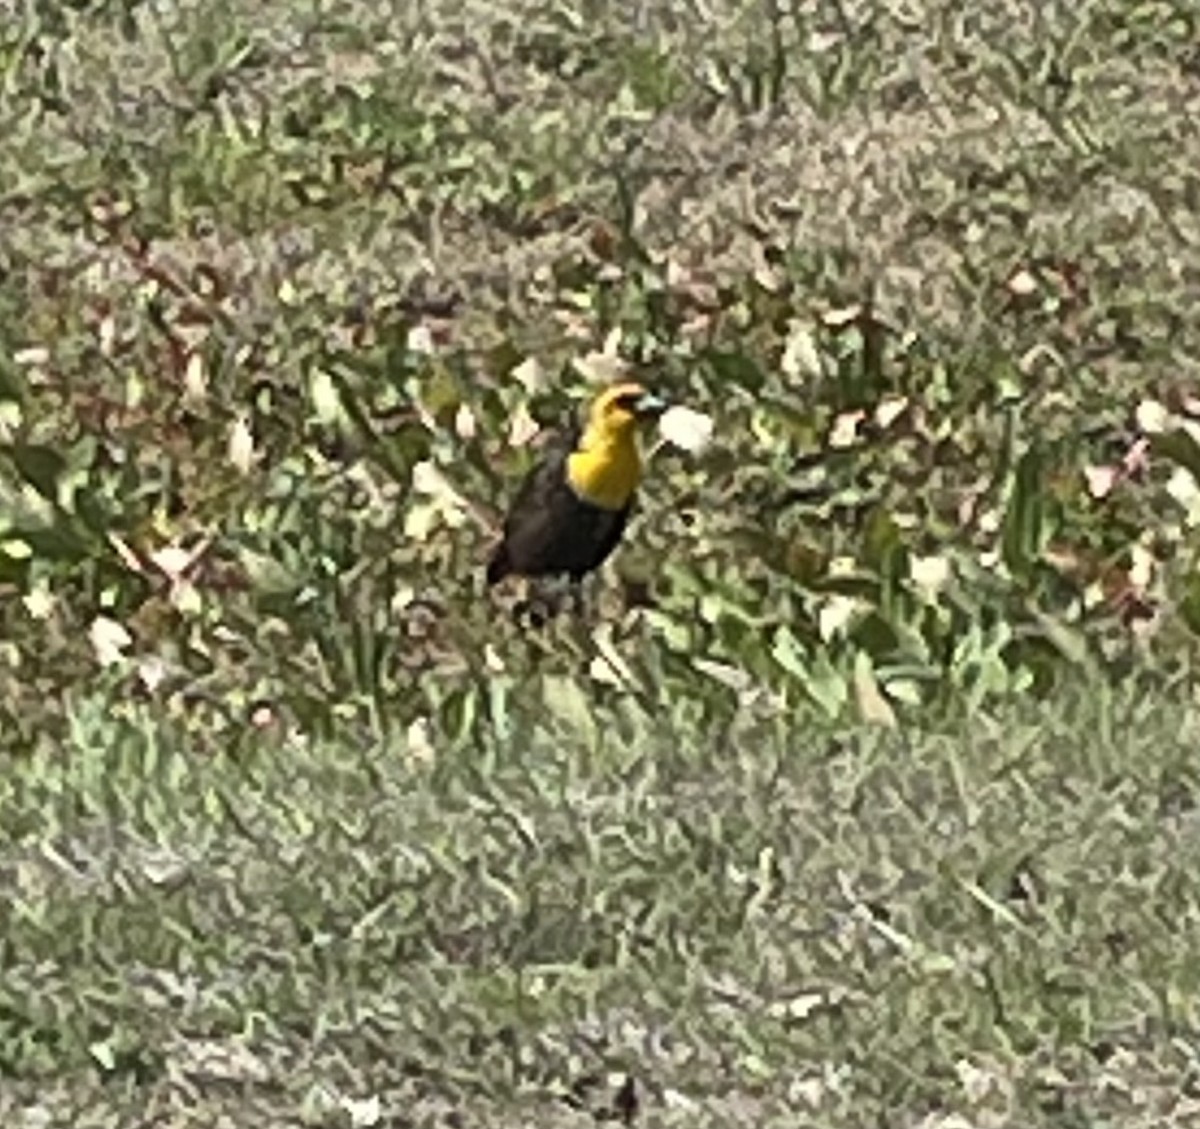 Yellow-headed Blackbird - Cinda Crosley